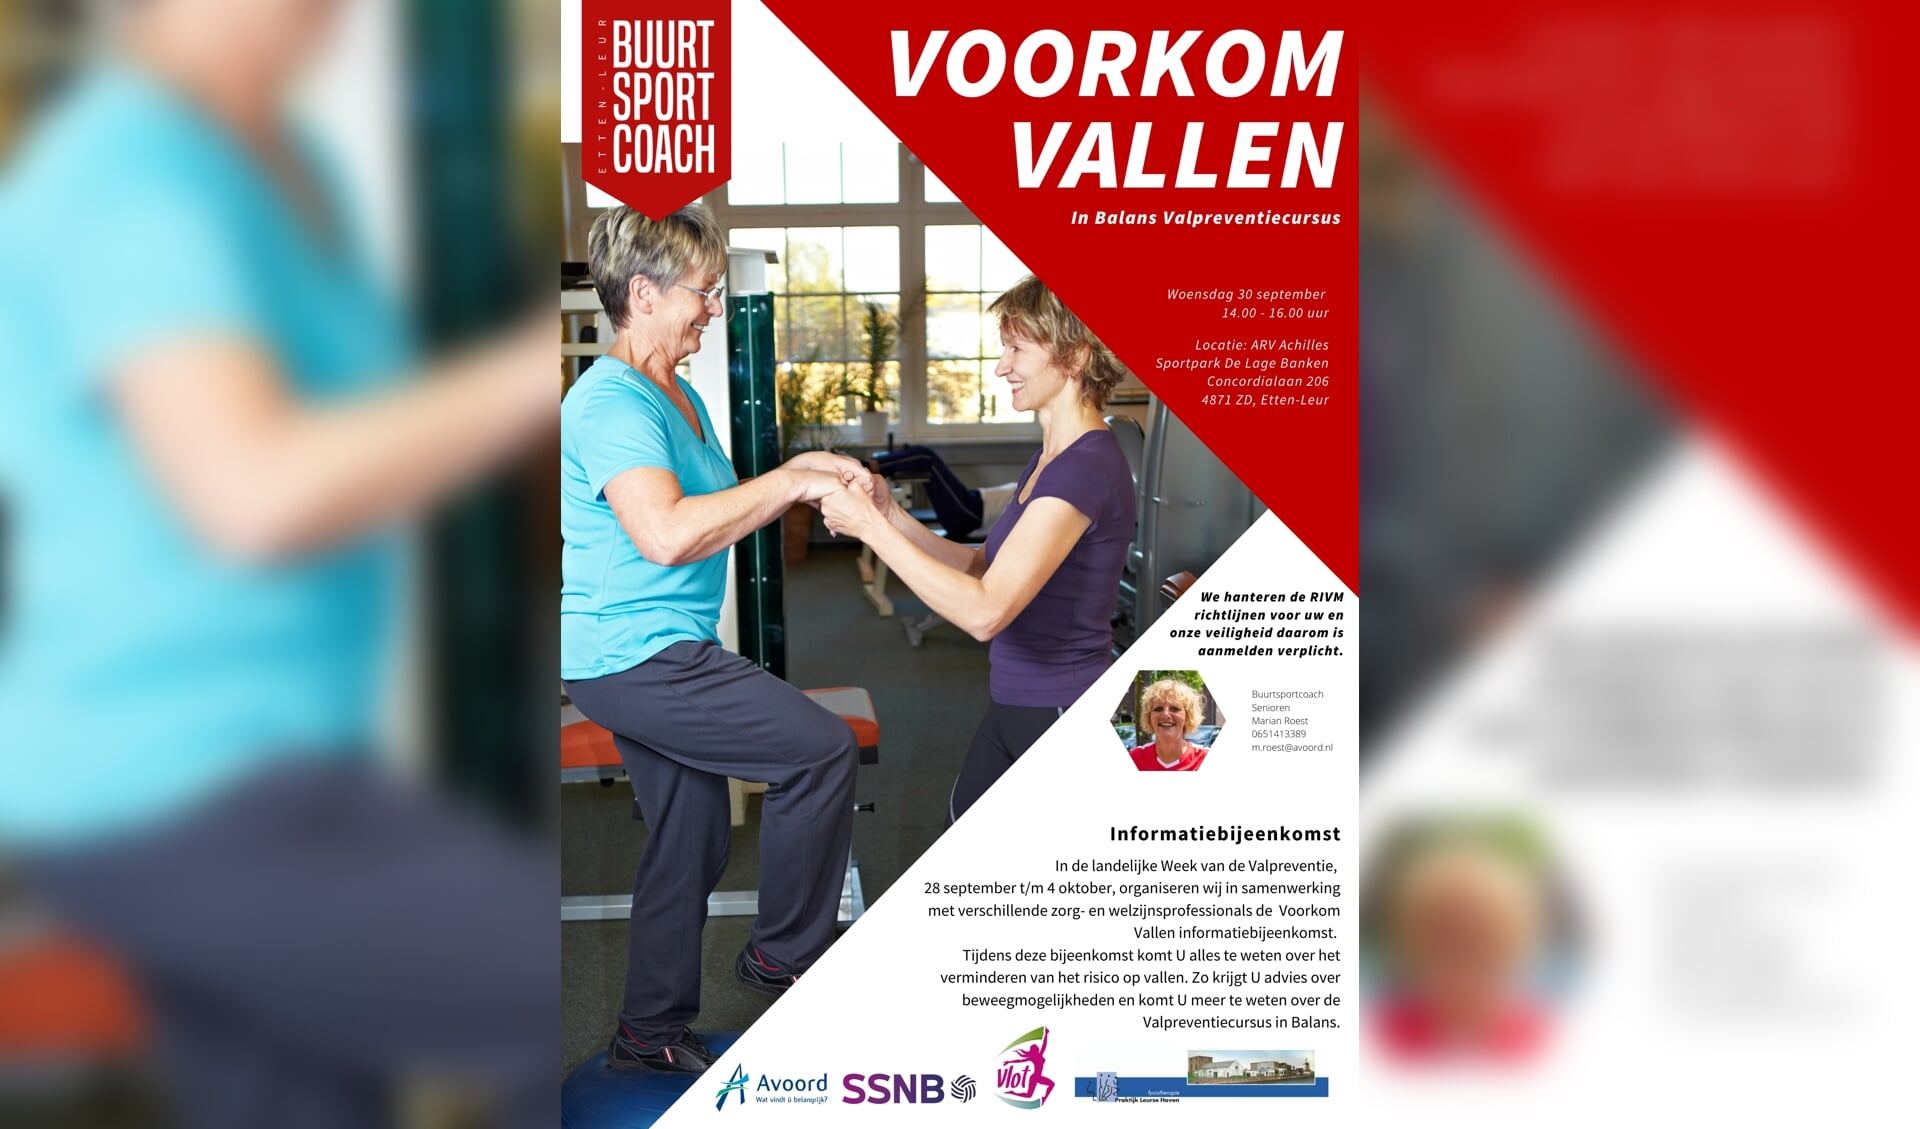 Buurtsportcoach Etten-Leur organiseert Voorkom Vallen informatiebijeenkomst.